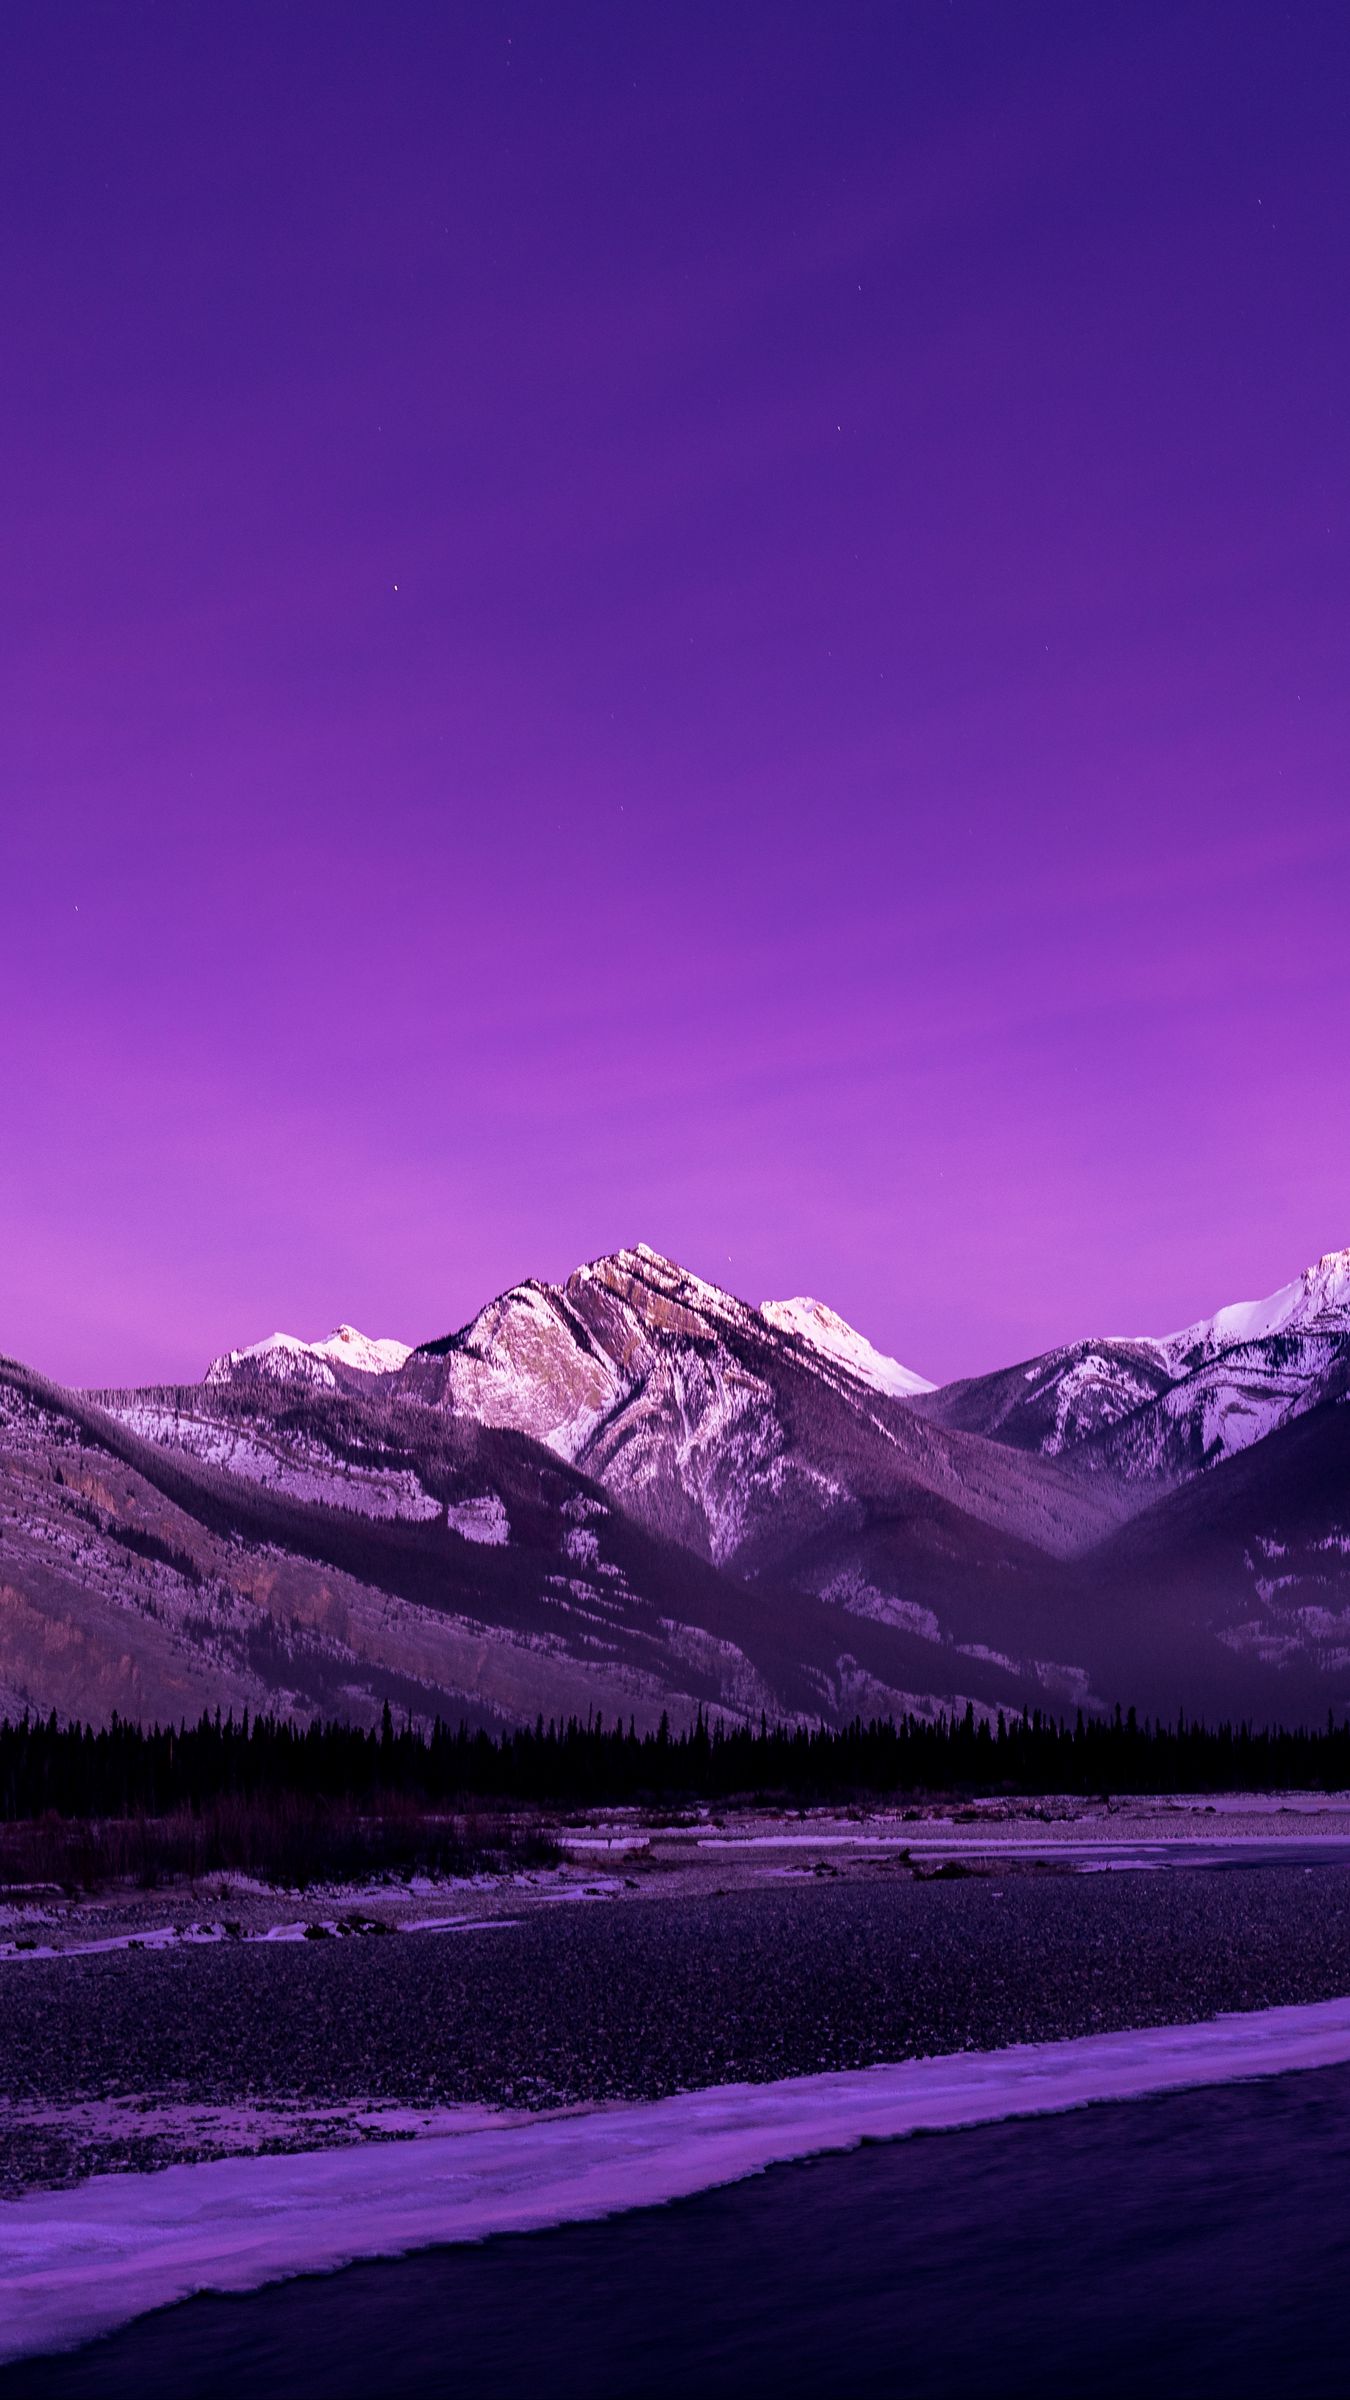 Hình nền đồi núi tím: Sự kết hợp của màu tím và thiên nhiên tạo nên một không gian đẹp mê hồn. Những đồi núi bao la, những bông hoa tím dịu dàng cùng với không gian mộc mạc sẽ mang lại cho bạn một cảm giác thư thái đầy ấm áp. Hãy nhấp chuột và tạo cho mình một hình nền tuyệt đẹp của đồi núi tím!